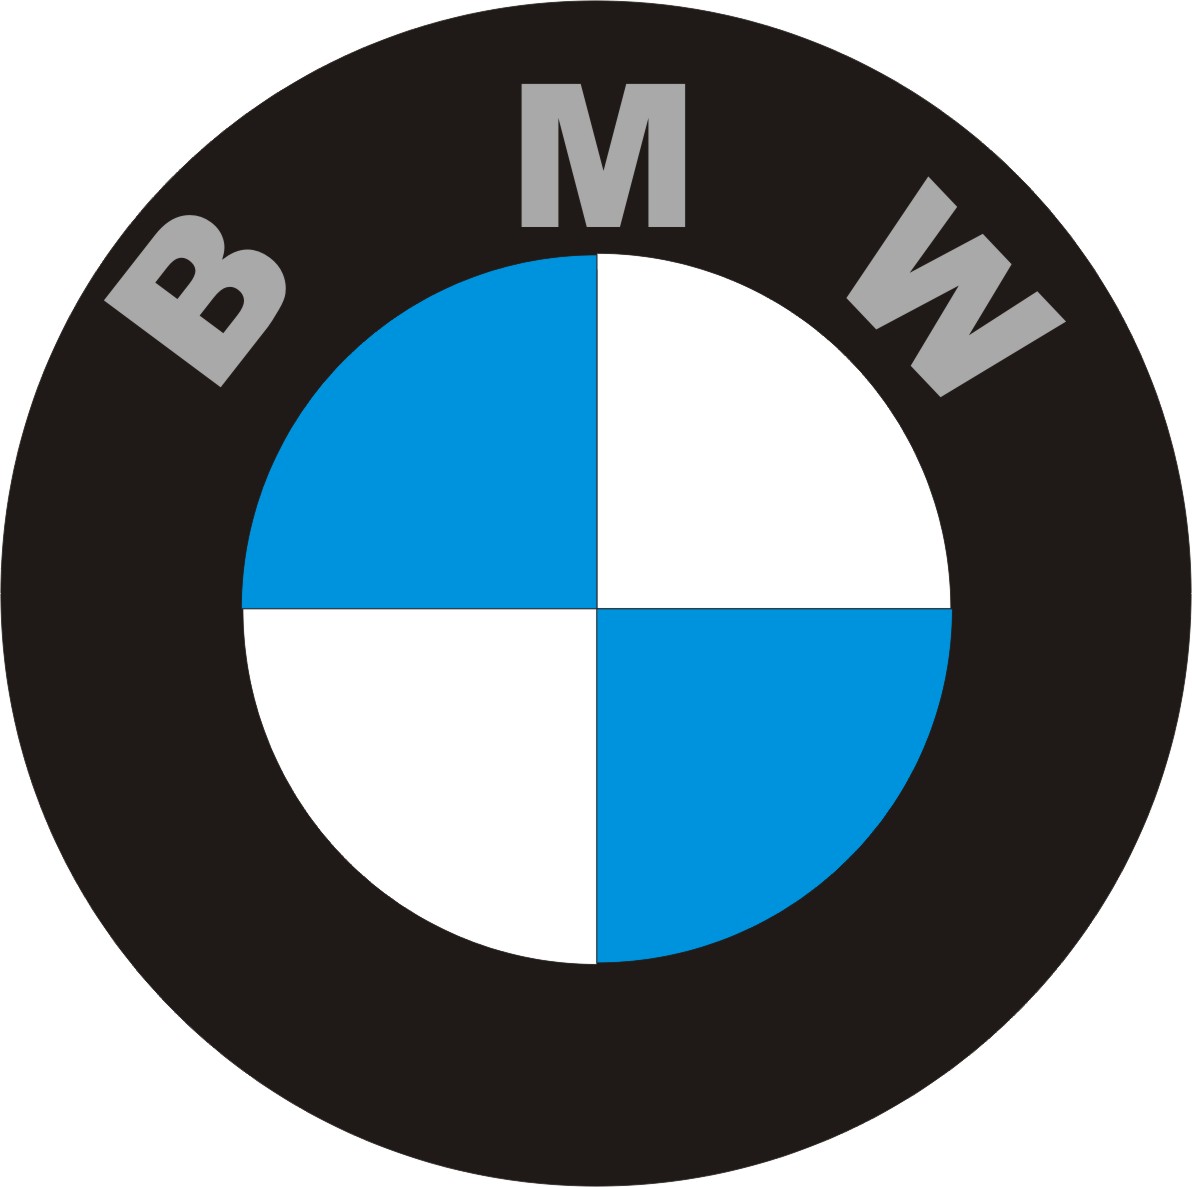 1970's BMW Logo  Bmw logo, Bmw, Bmw vintage